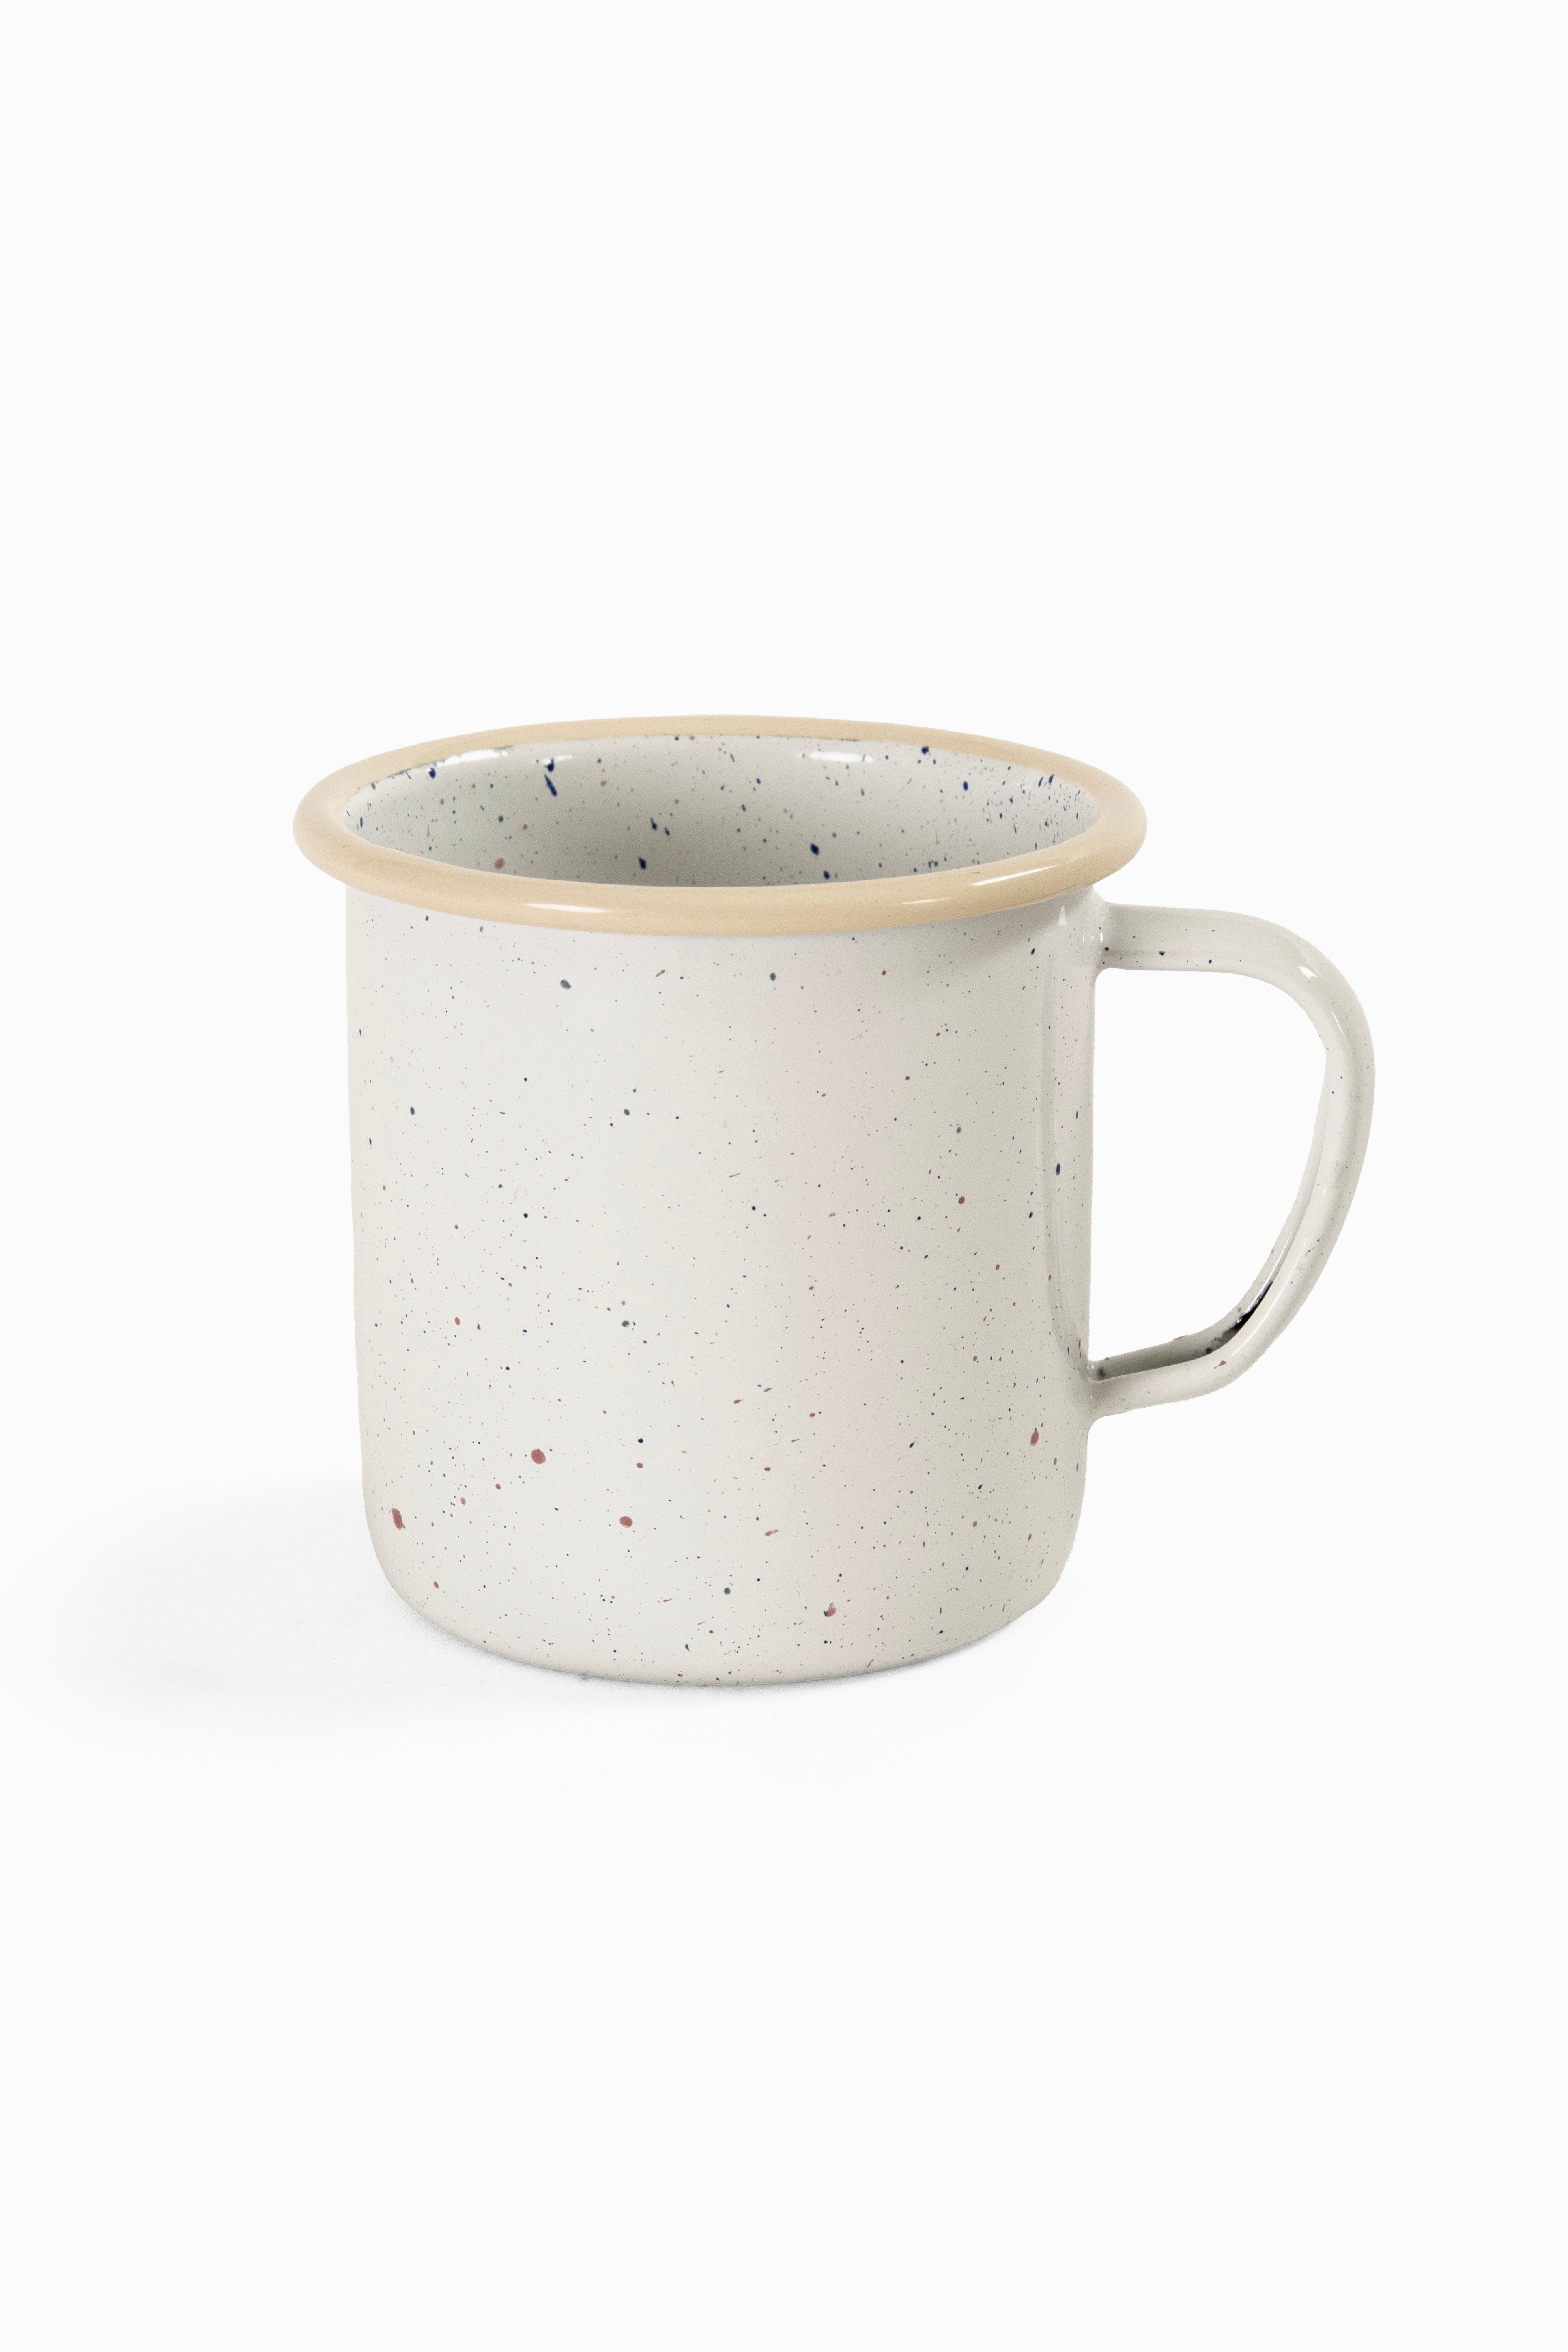 Cream speckled enamel coffee mug